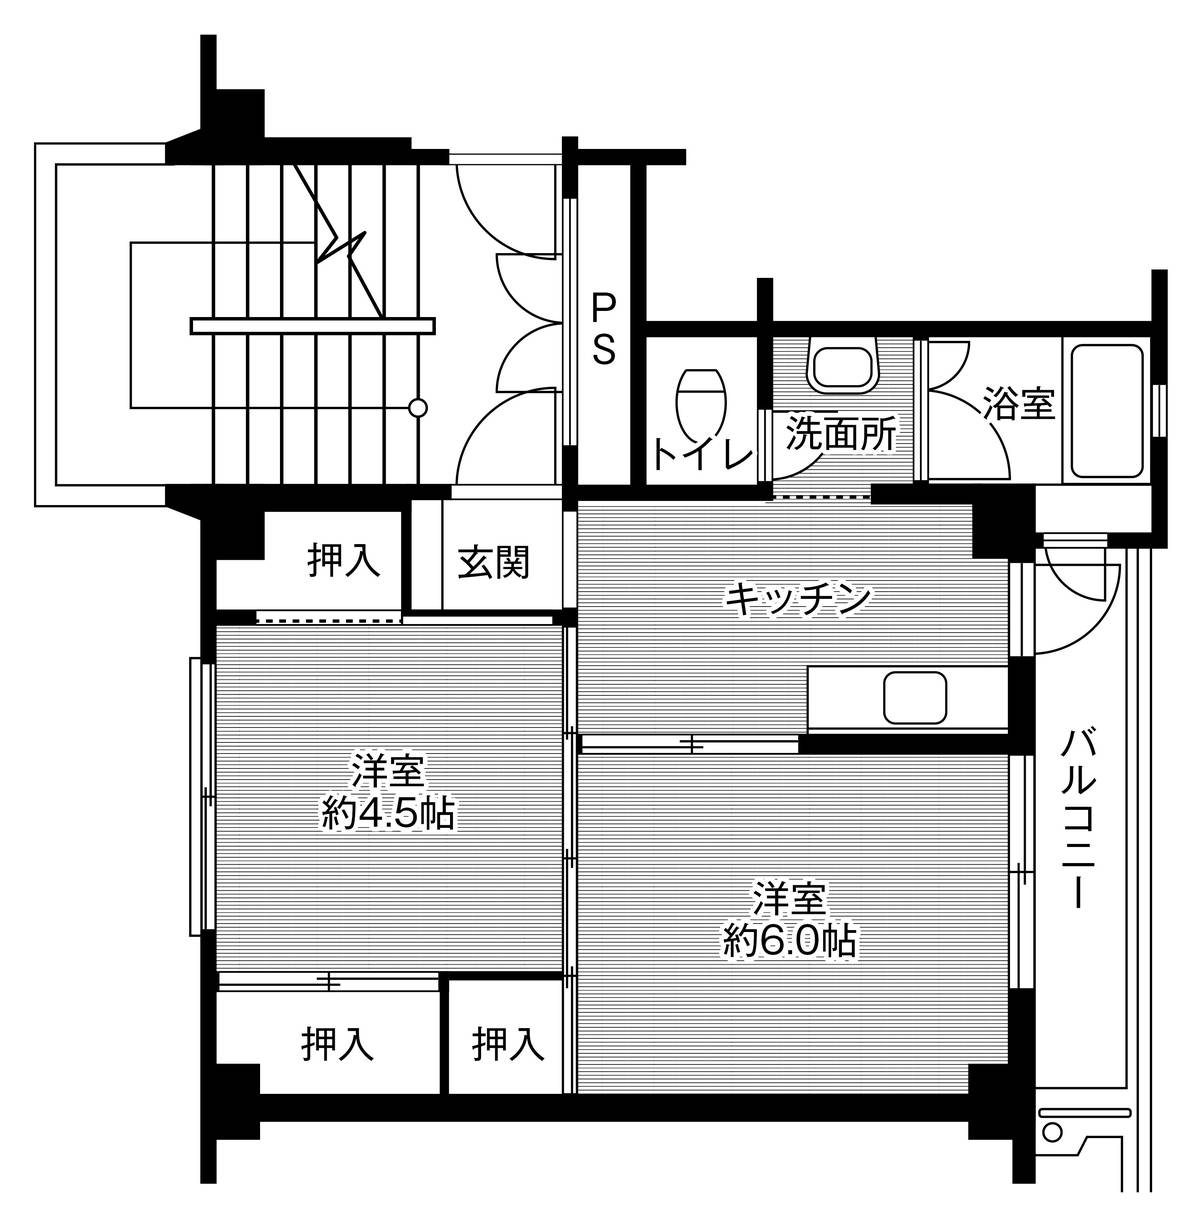 Sơ đồ phòng 2K của Village House Miyagasako ở Kure-shi